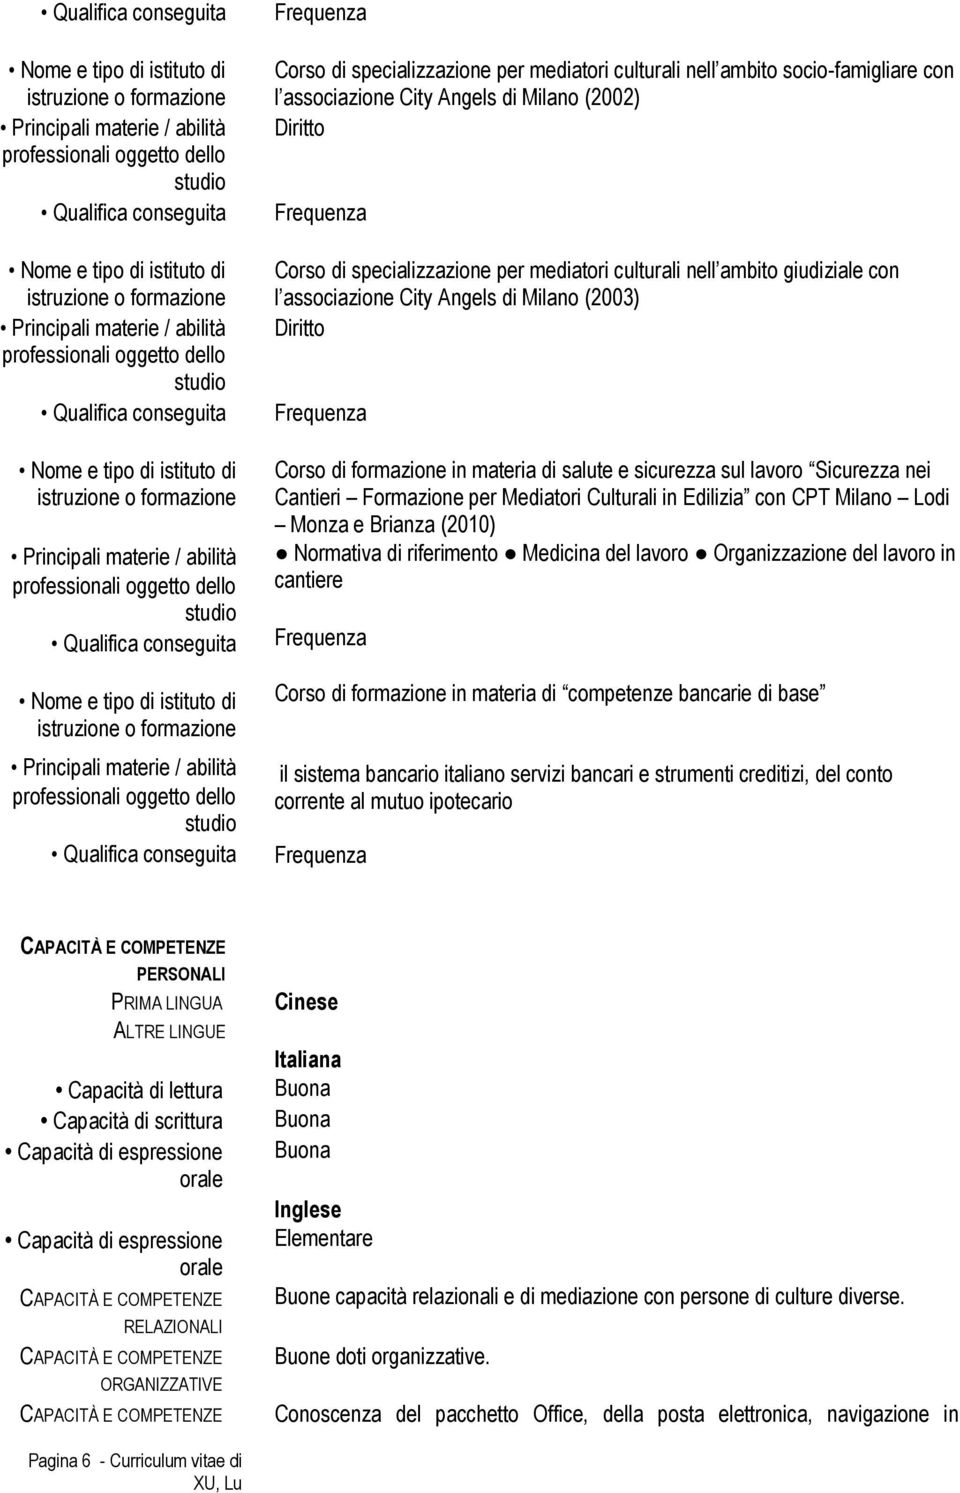 con nei Cantieri l associazione Formazione City Angels per Mediatori Milano Culturali (2003) in Edilizia con CPT Milano Lodi Monza e Brianza (2010) Diritto Normativa di riferimento Medicina del